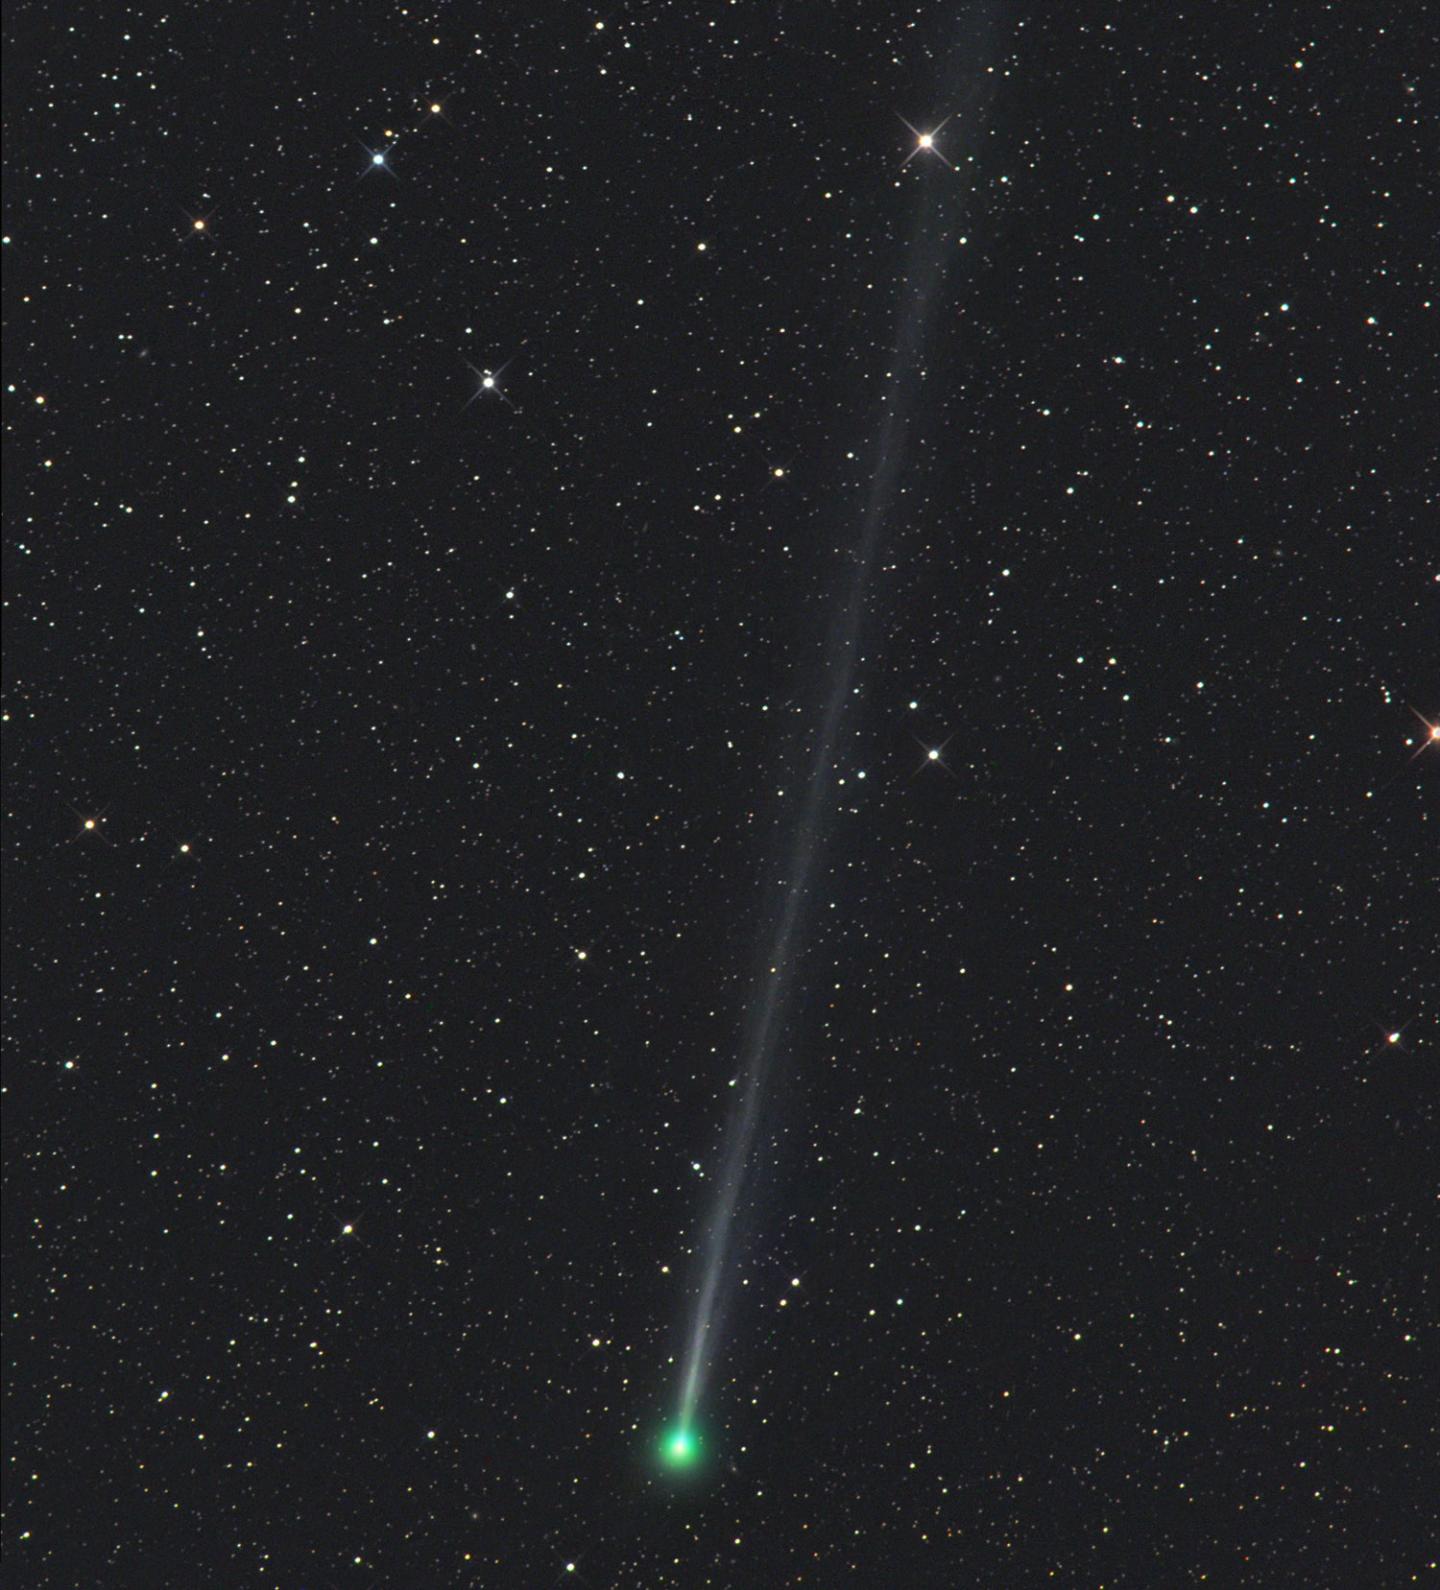 Comet 45P/Honda-Mrkos-Pajdušáková